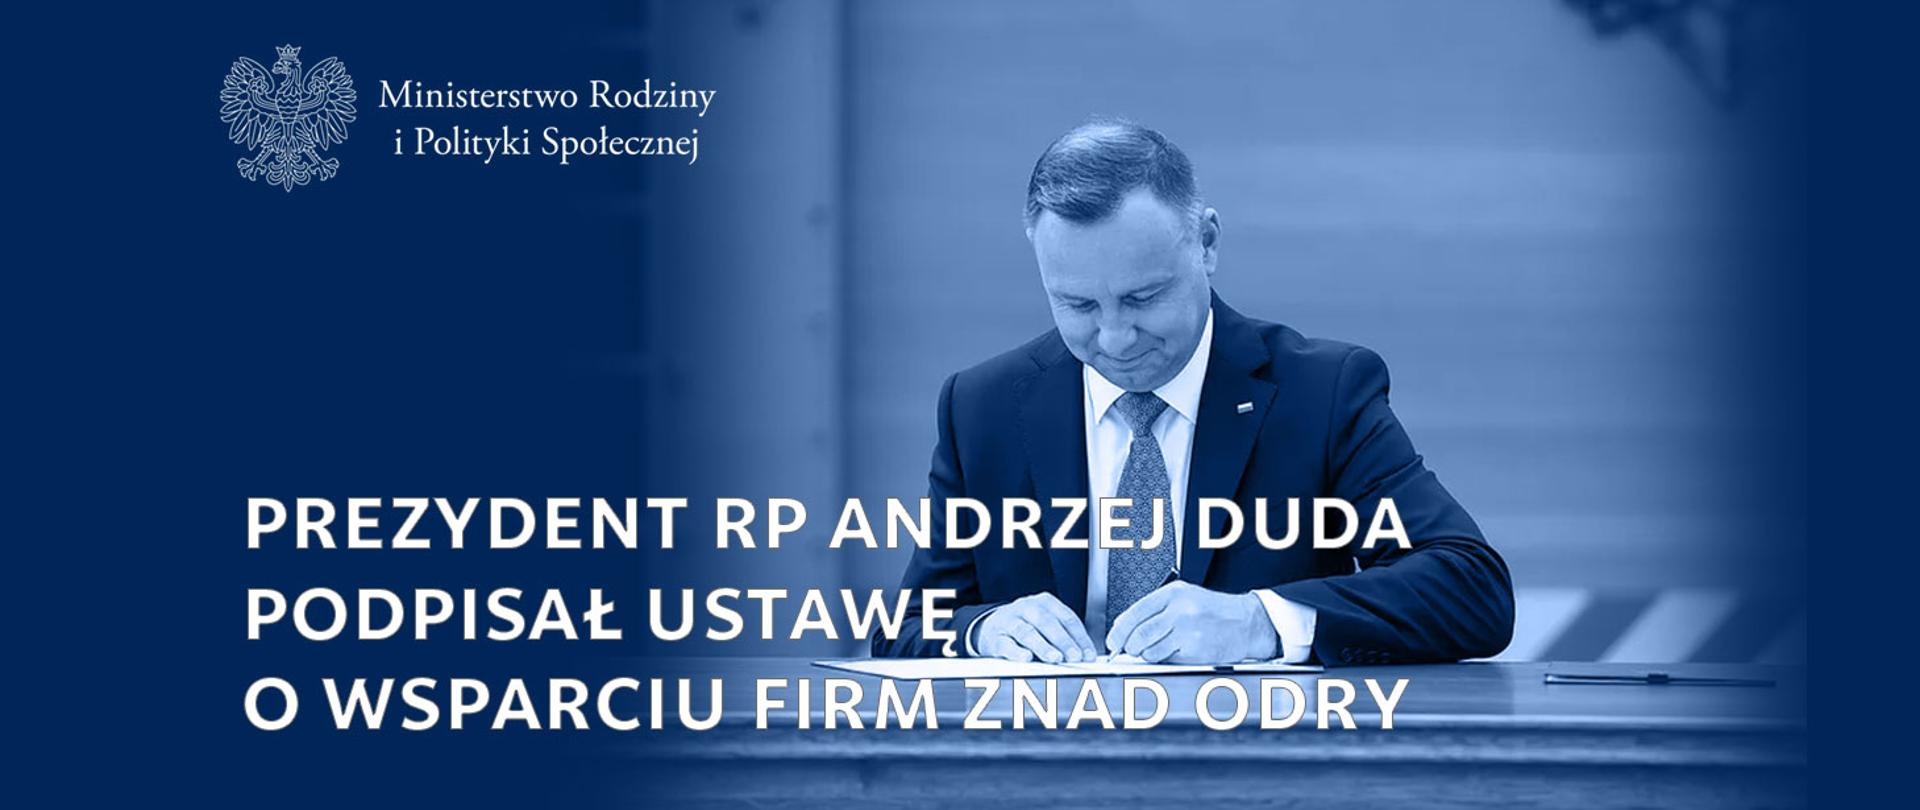 Na zdjęciu Prezydent Andrzej Duda podpisujący dokument. Obok napis: Prezydent RP Andrzej Duda podpisał ustawę o wsparciu firm znad Odry